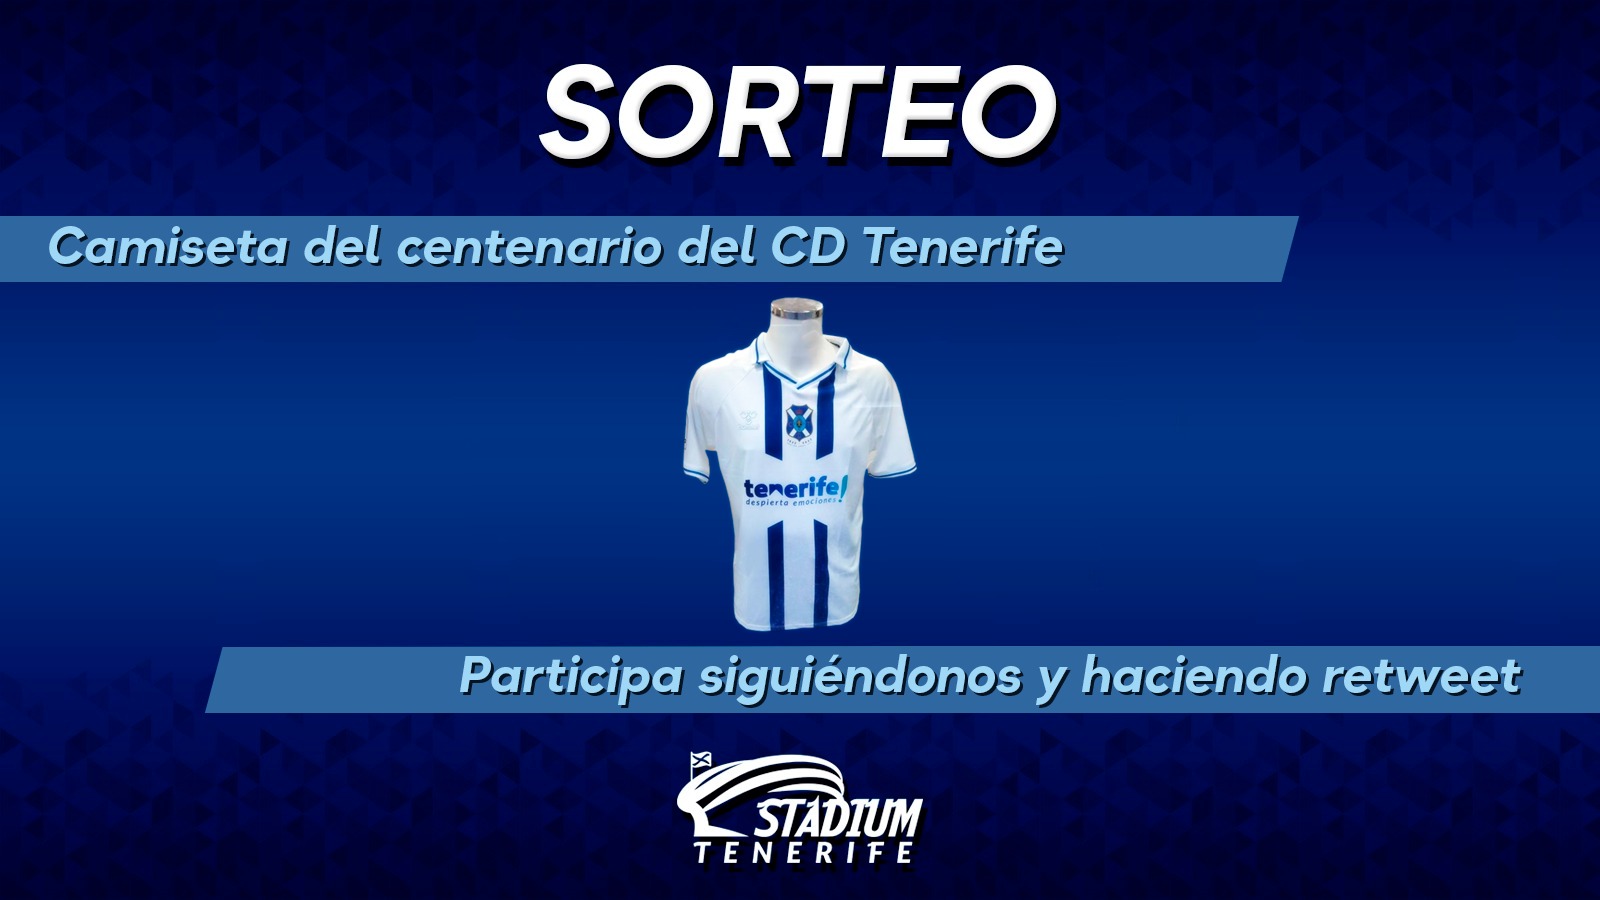 En Stadium Tenerife sorteamos la camiseta del Centenario del CD Tenerife